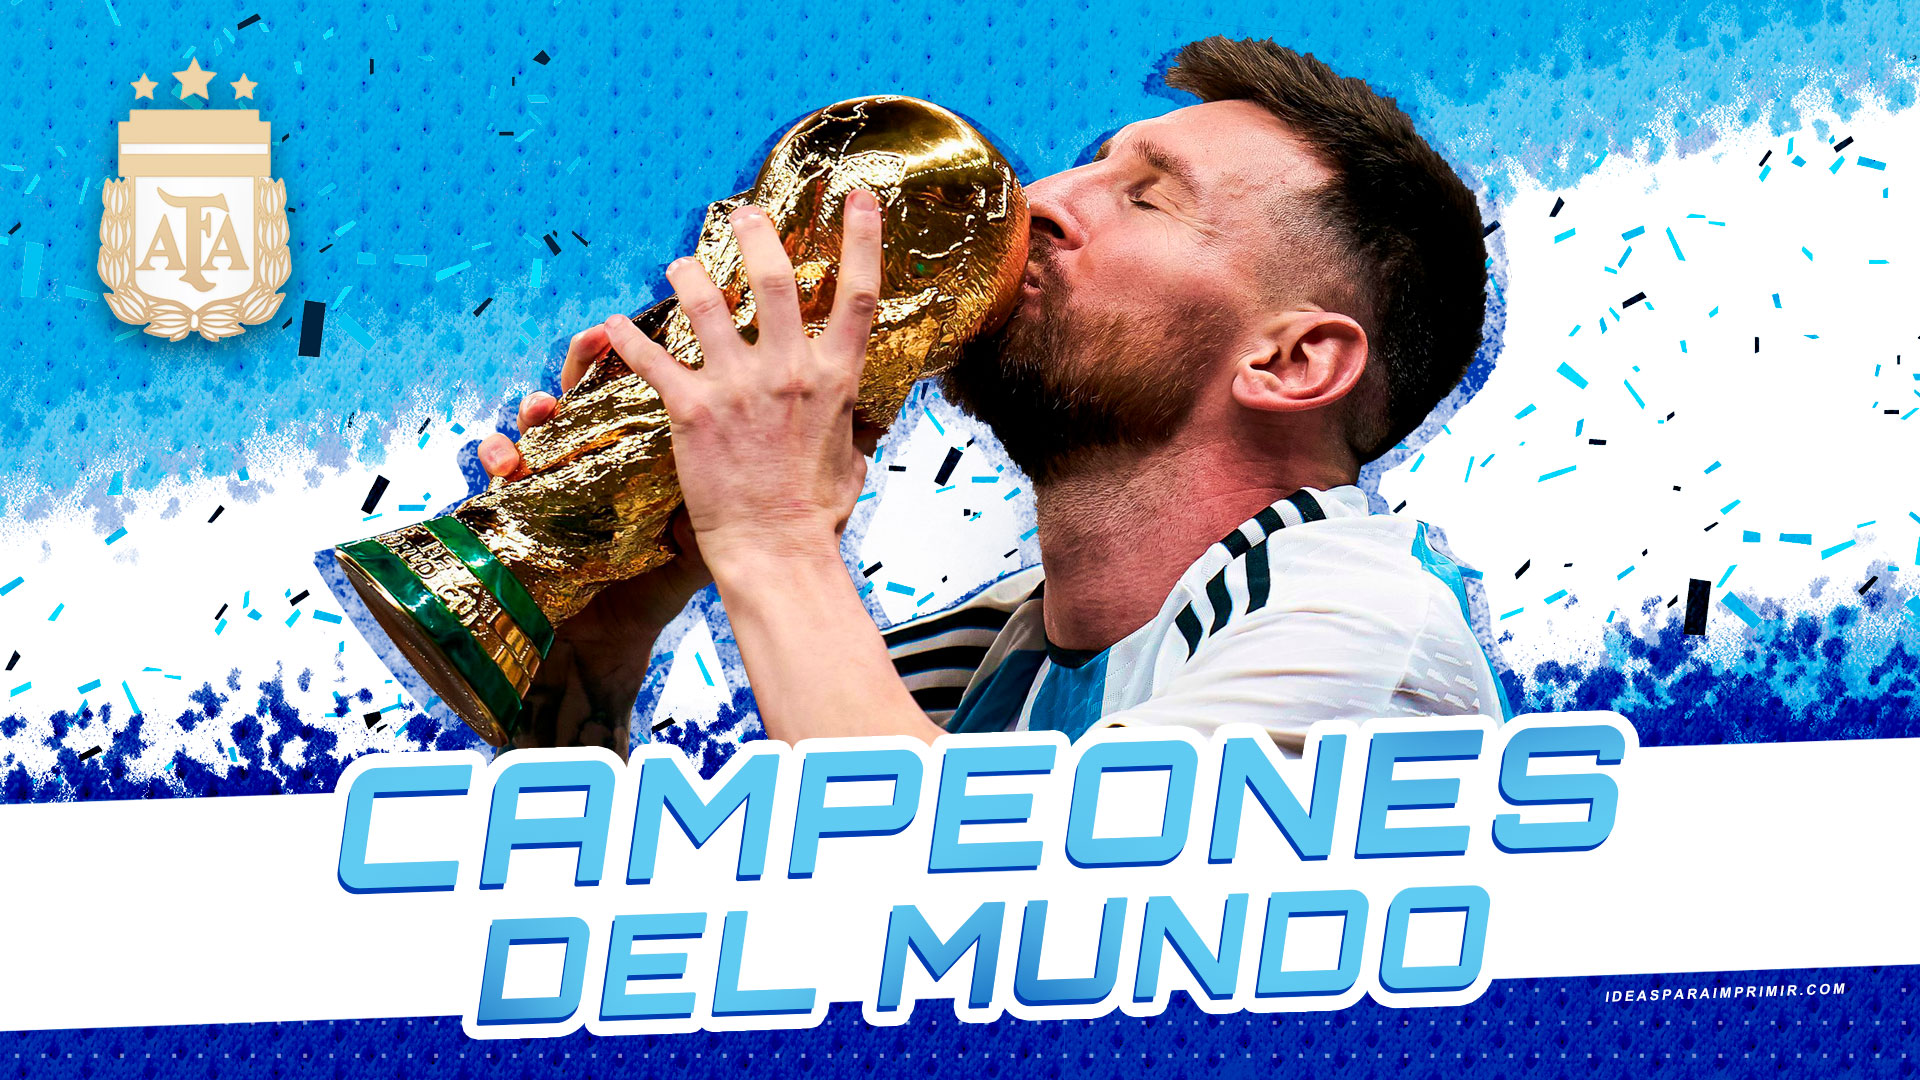 Wallpapers de Argentina Campeón del mundo FIFA World Cup Qatar 2022.  Wallpaper de Messi sosteniendo la copa del mundo. - Ideas para imprimir